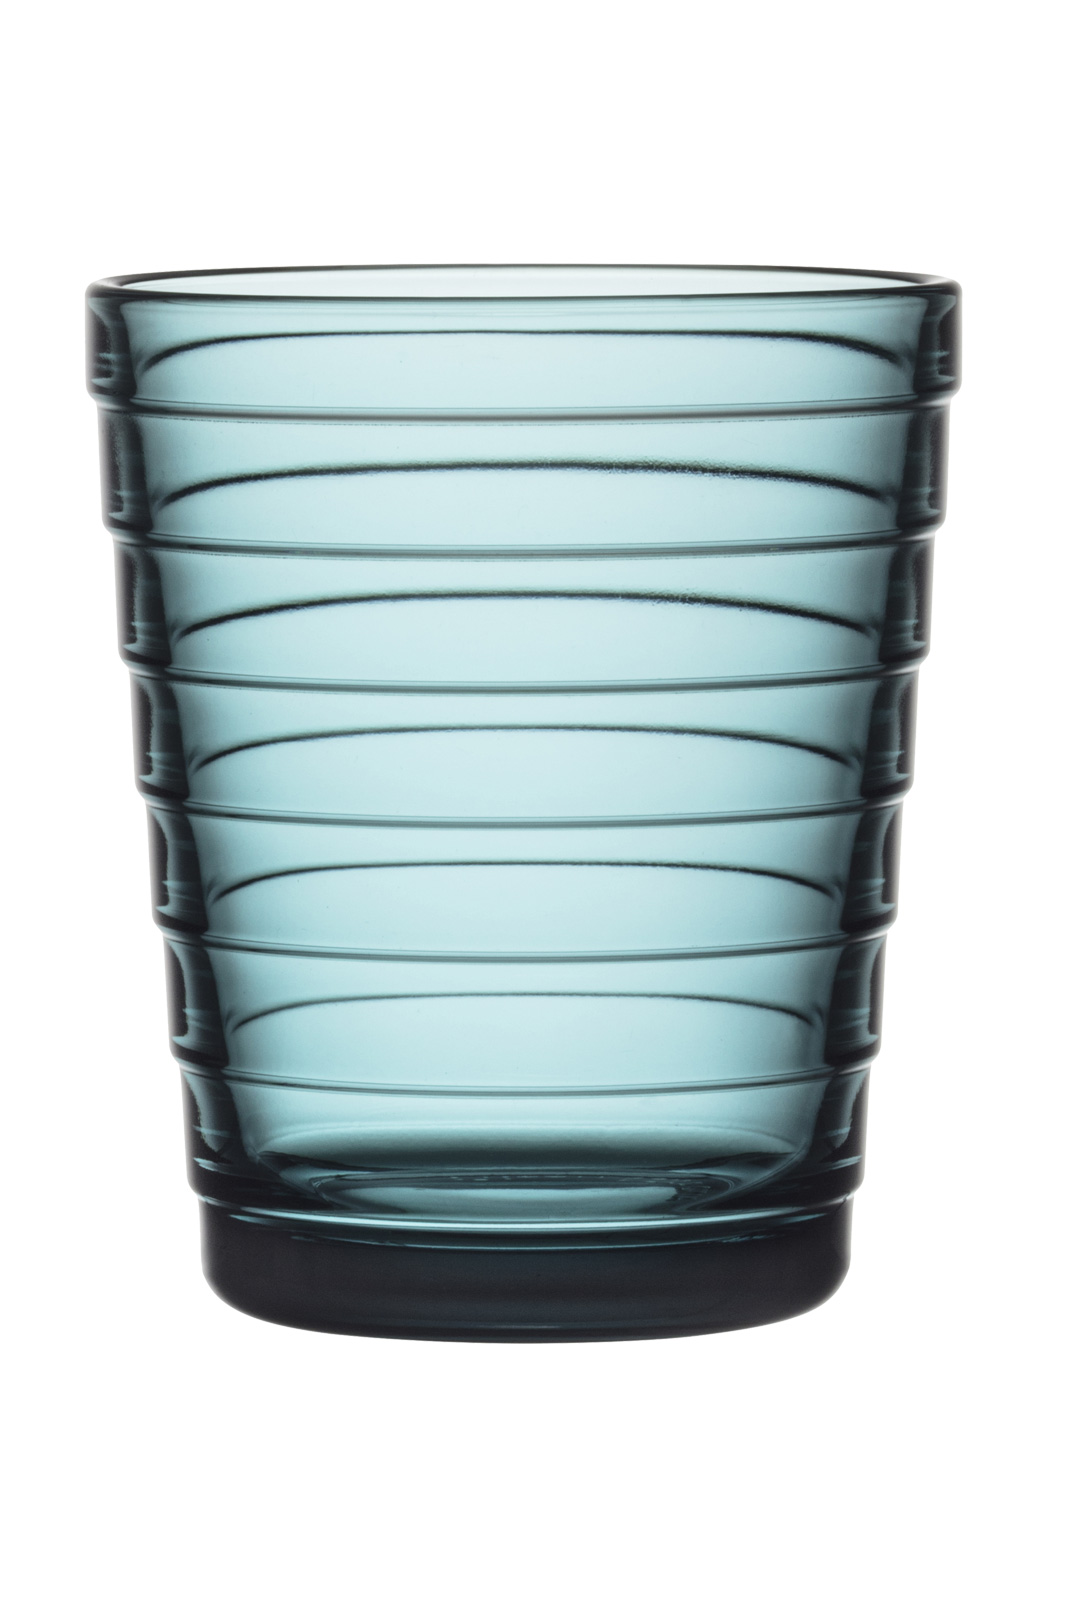 iittala Aino Aalto Glas 0,22ltr. sea blue/meeresblau